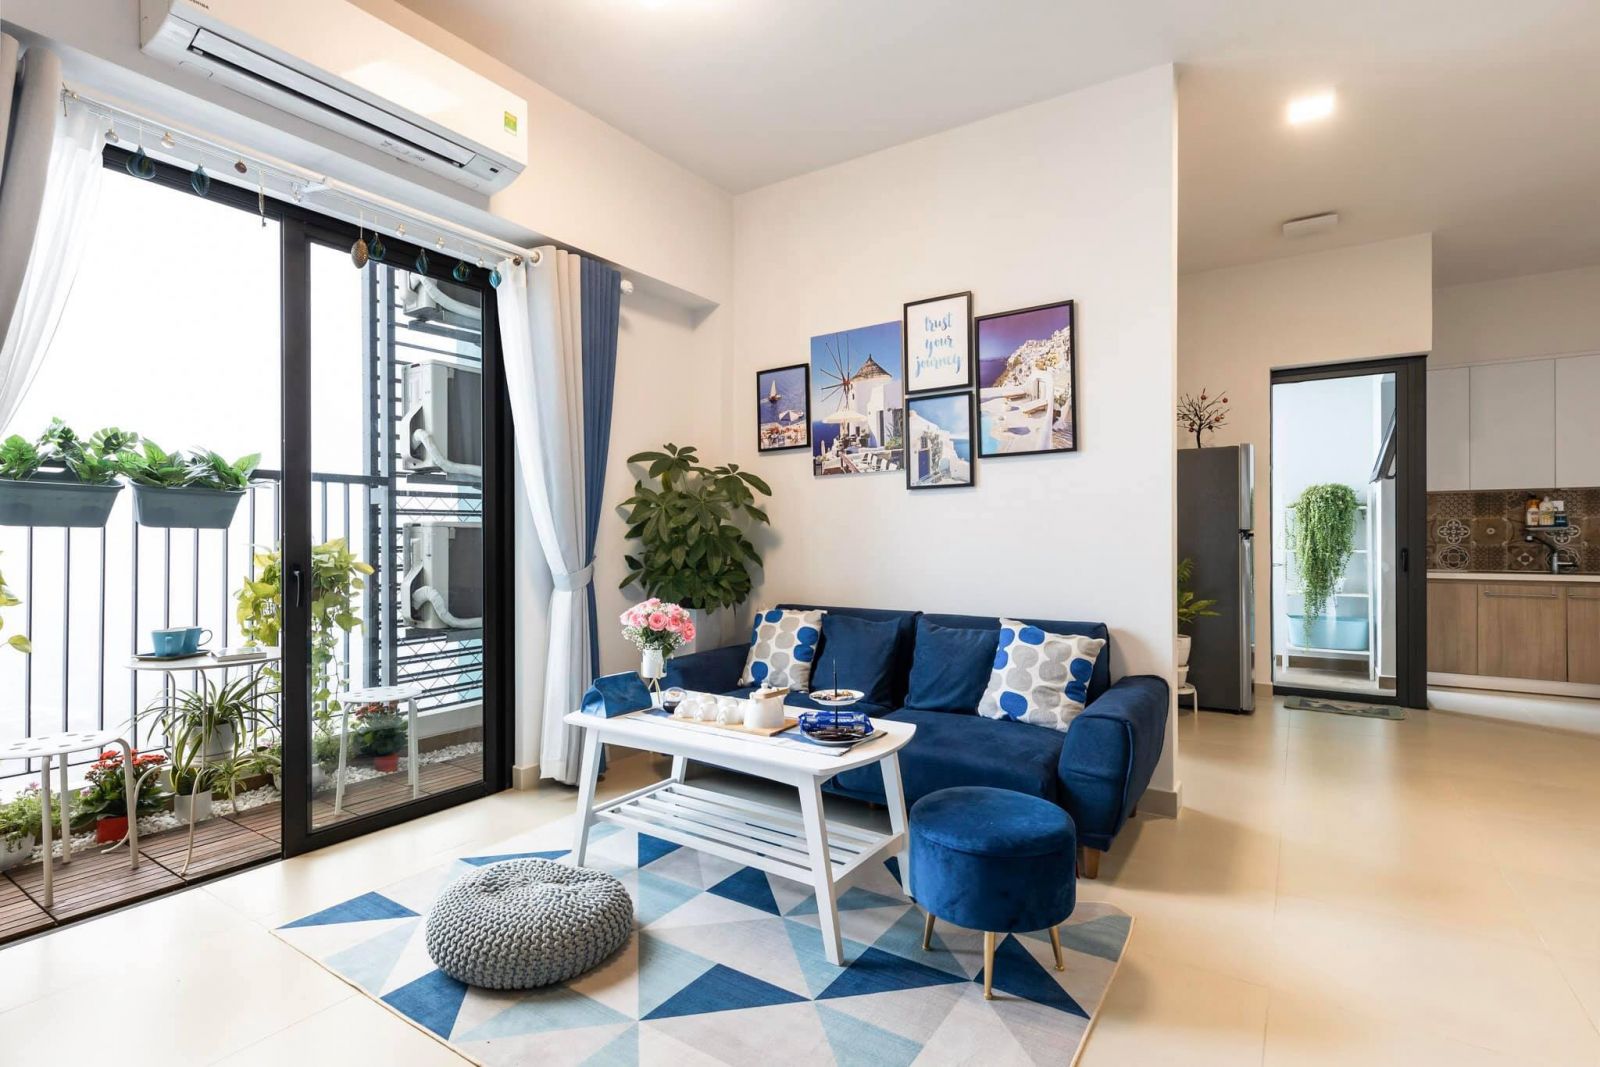 Các mẫu sofa đẹp cho căn hộ chung cư hiện đại - MySofa